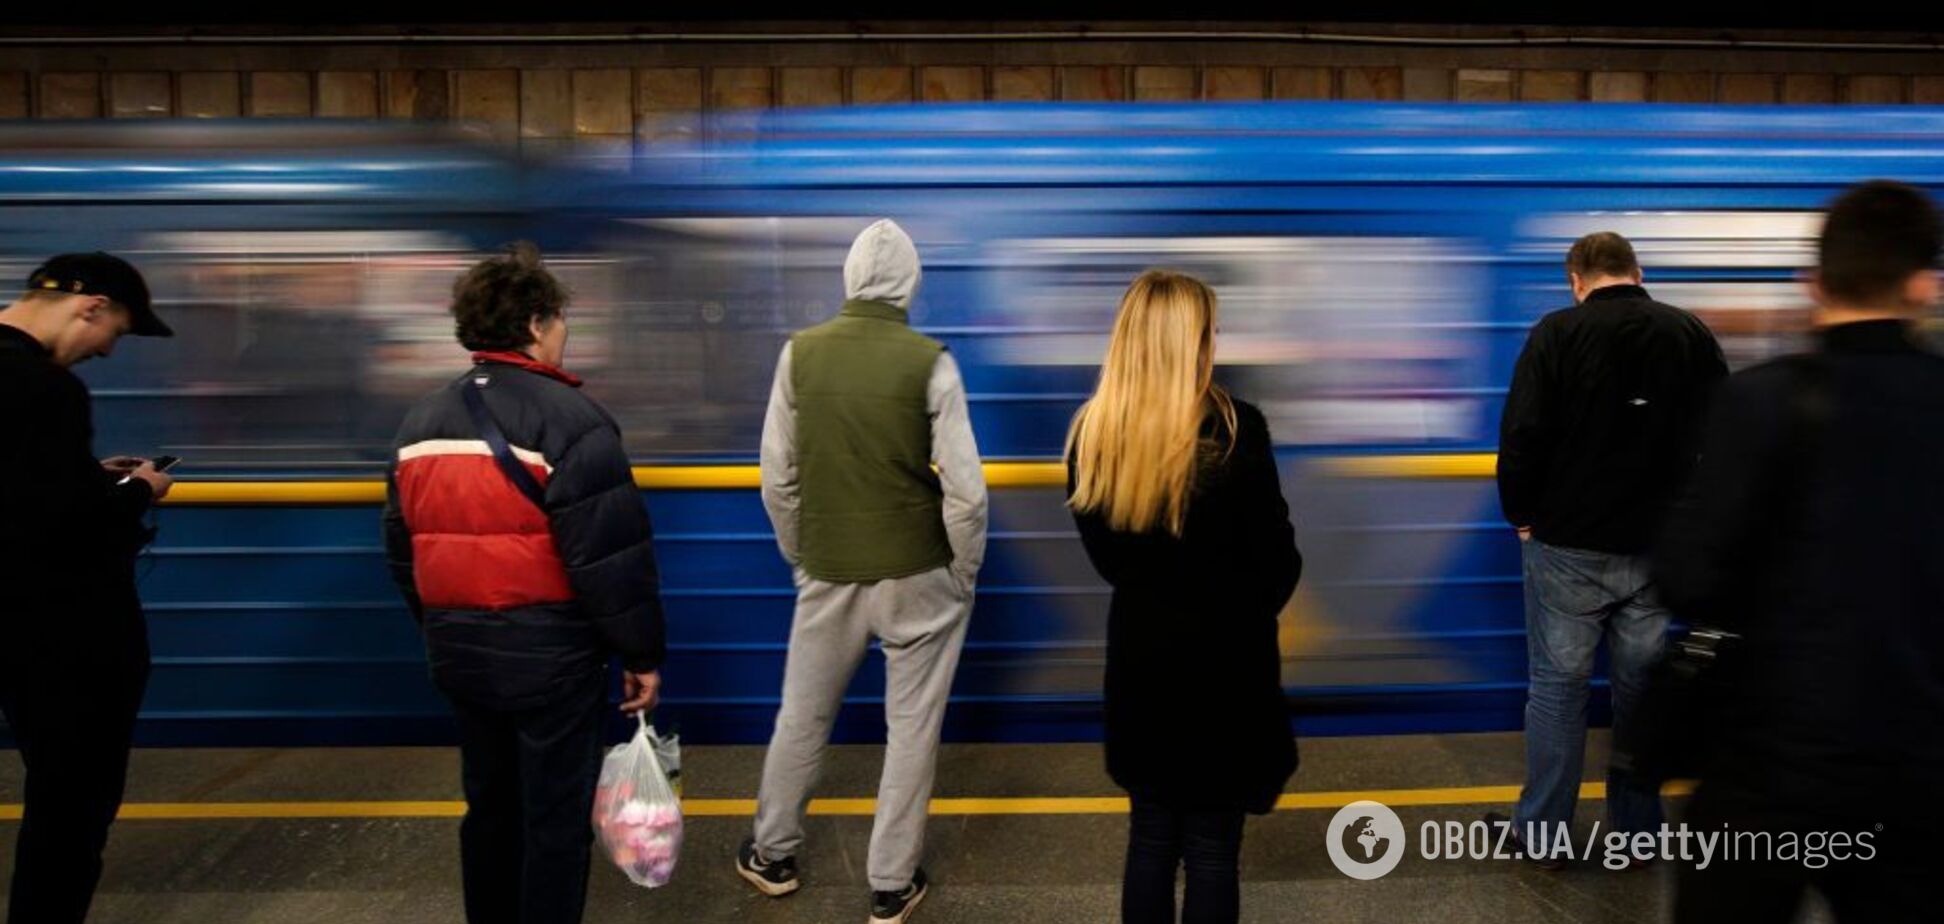 Метро стало: в Киеве в подземке случилось ЧП. Видеофакт